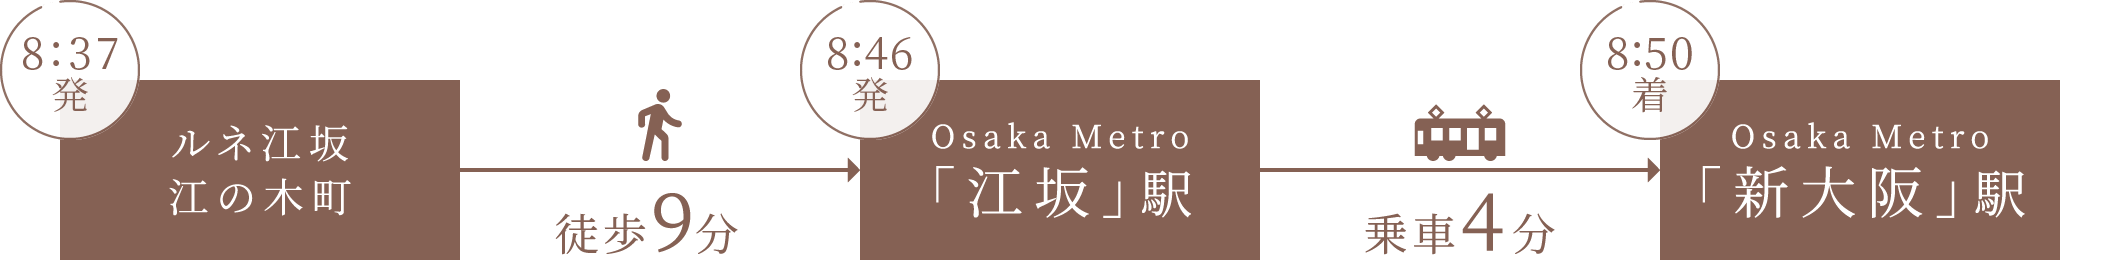 8:37発 ルネ江坂江の木町 徒歩9分 8:46発 Osaka Metro「江坂」駅 乗車11分 8:57着 Osaka Metro「梅田」駅